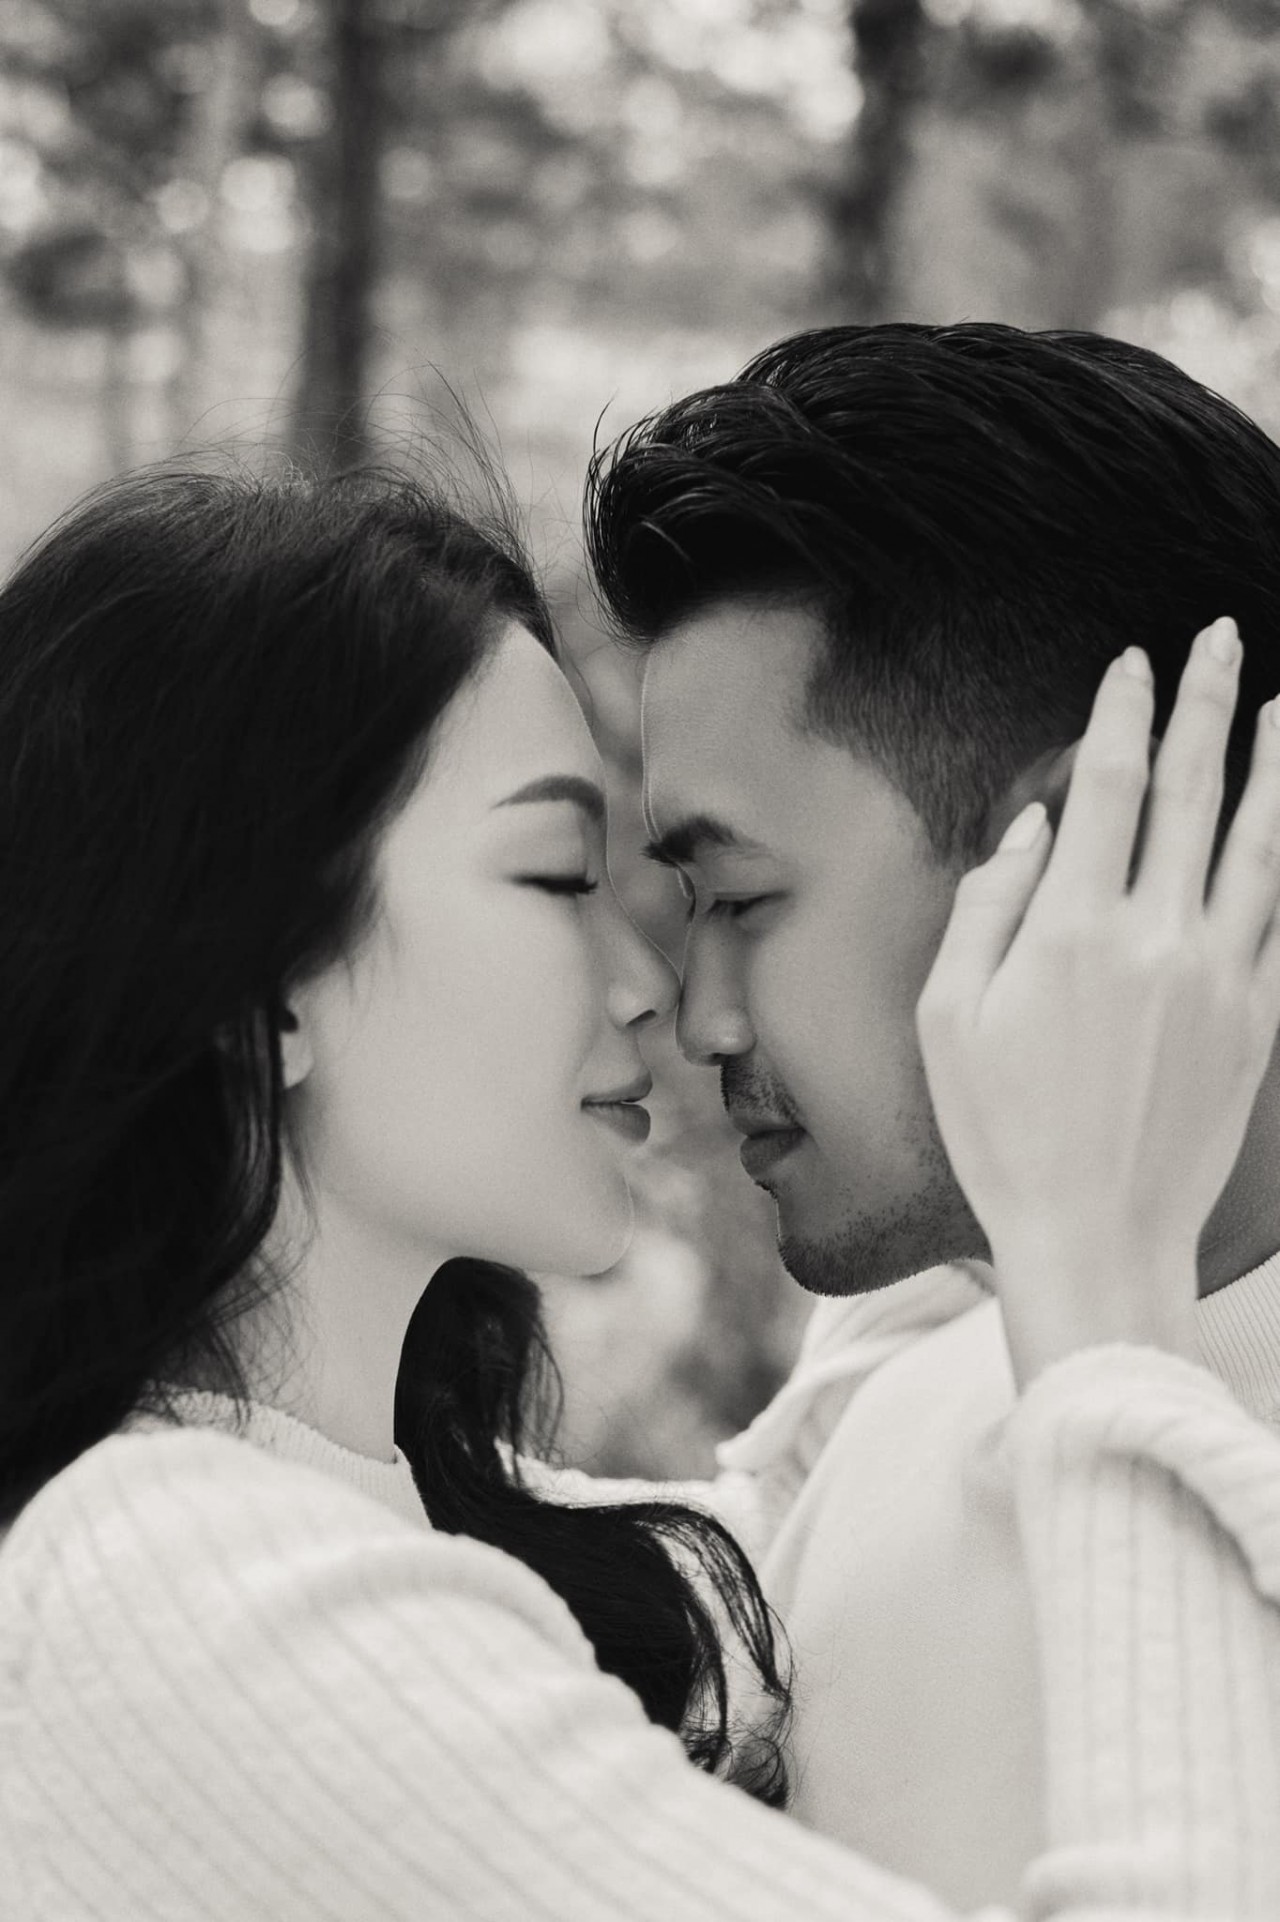 Thiếu gia Phillip Nguyễn và người mẫu Linh Rin sắp kết hôn